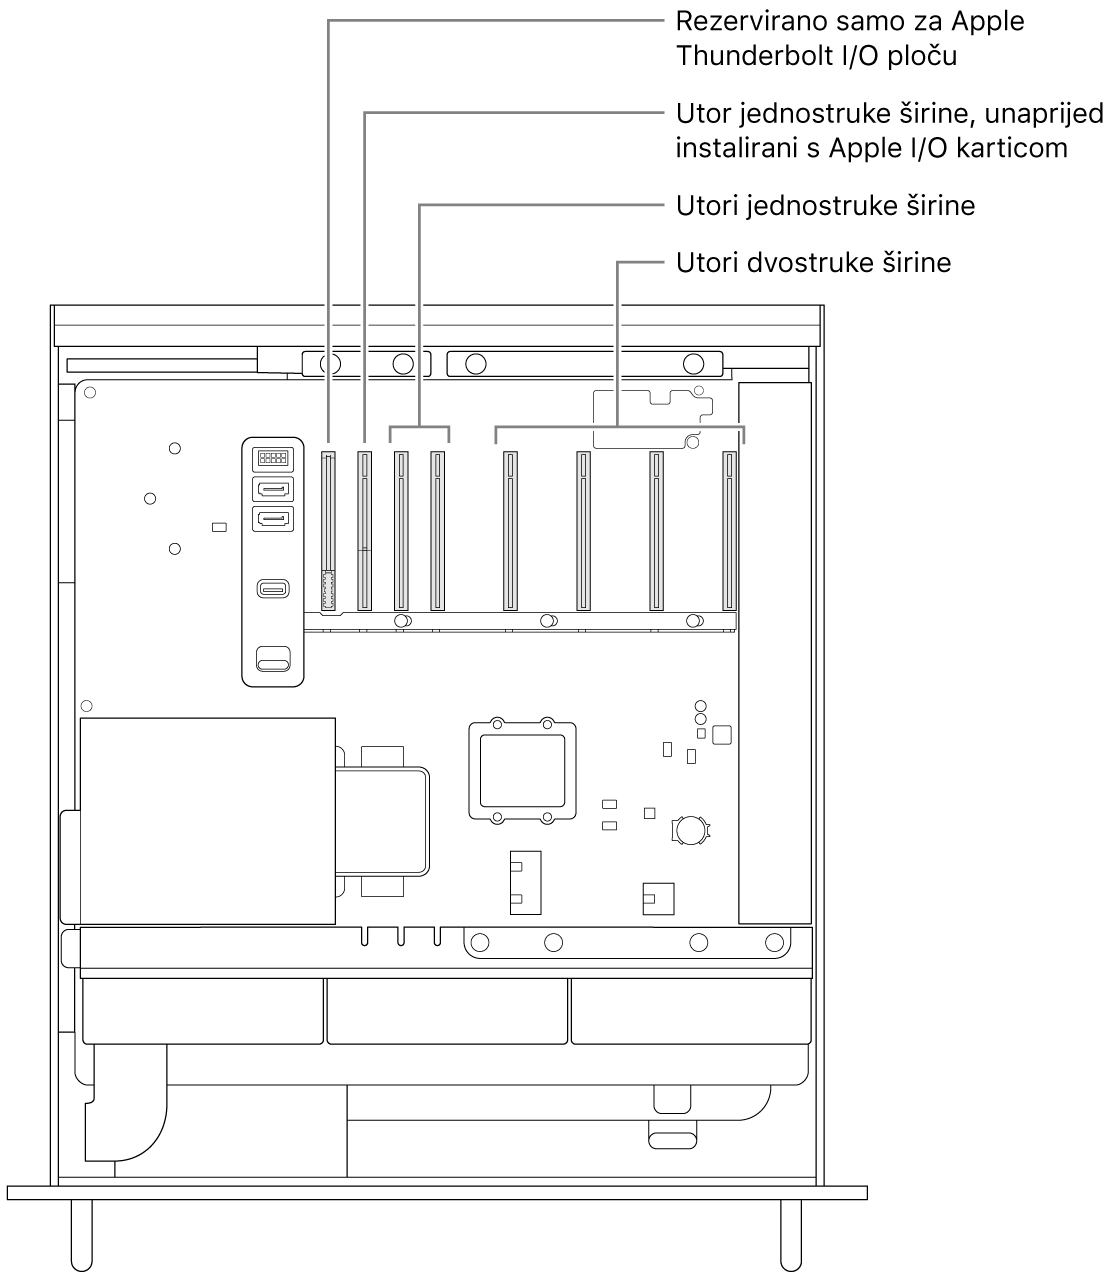 Bočna strana Mac Pro računala otvorena s oblačićima koji pokazuju lokaciju utora za ploču Thunderbolt I/O, utor s jednostrukom širinom za Apple I/O karticu, dva utora s jednostrukom širinom i četiri utora s dvostrukom širinom.